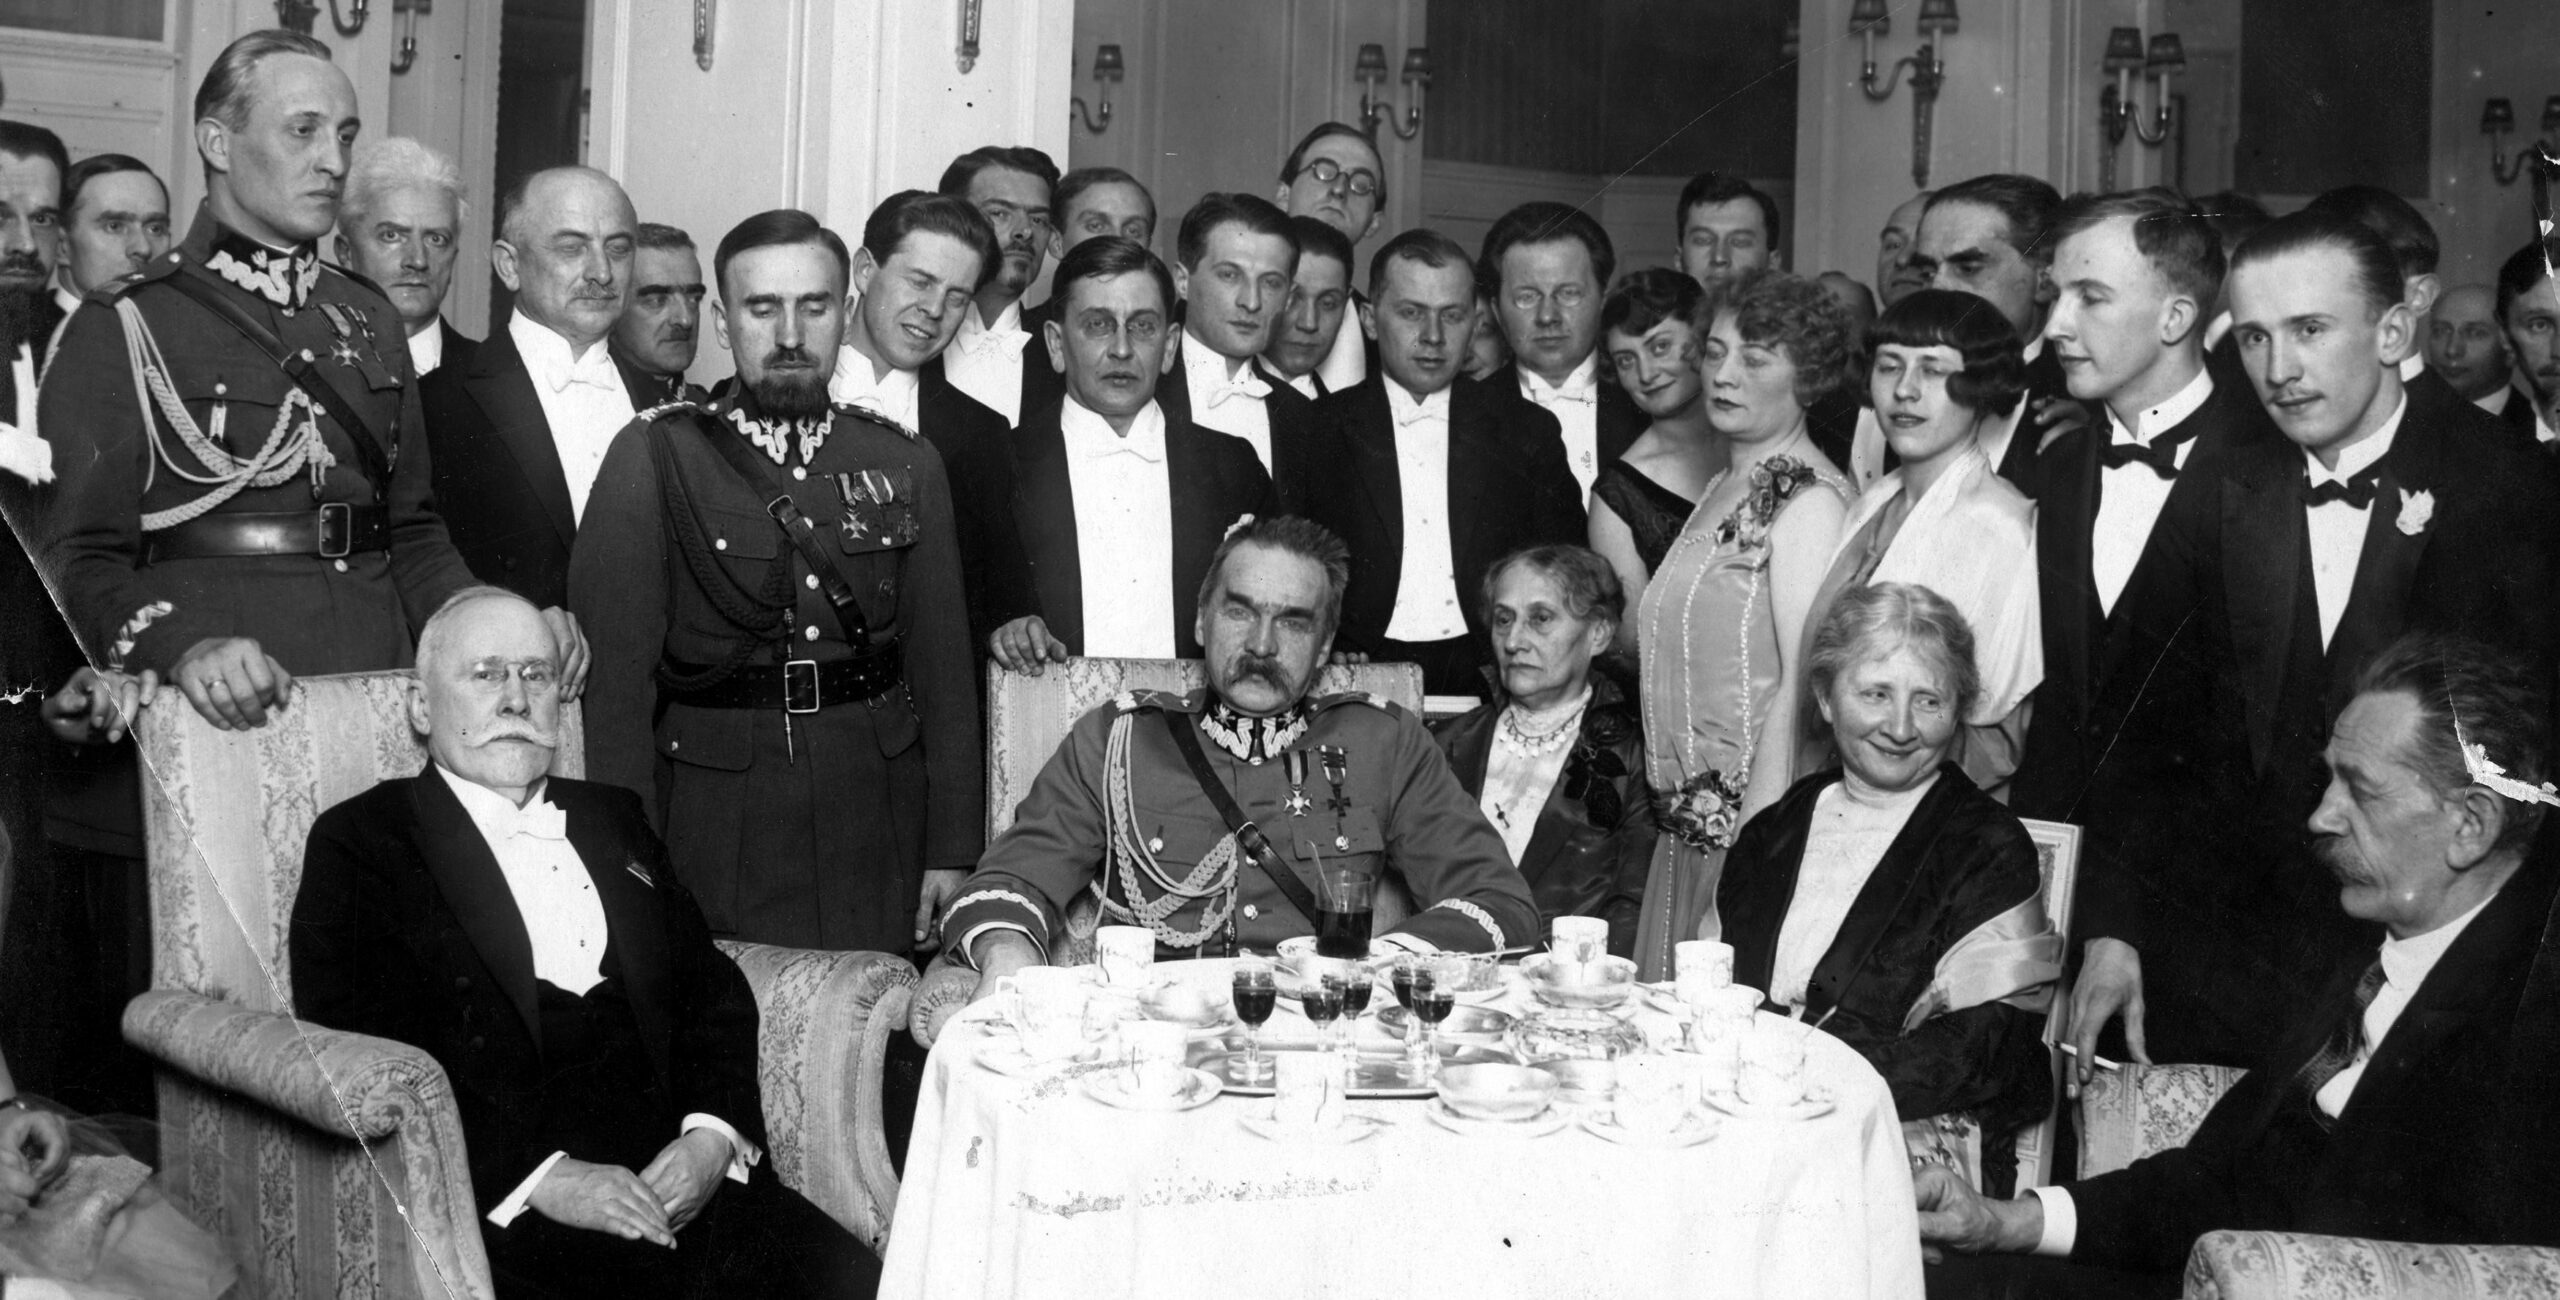 Przy stole od lewej Wacław Sieroszewski i Józef Piłsudski. Przy stole siedzi też Jędrzej Moraczewski. Za nimi stoi grupa odświętnie ubranych osób, wśród nich m.in. Andrzej Strug i 